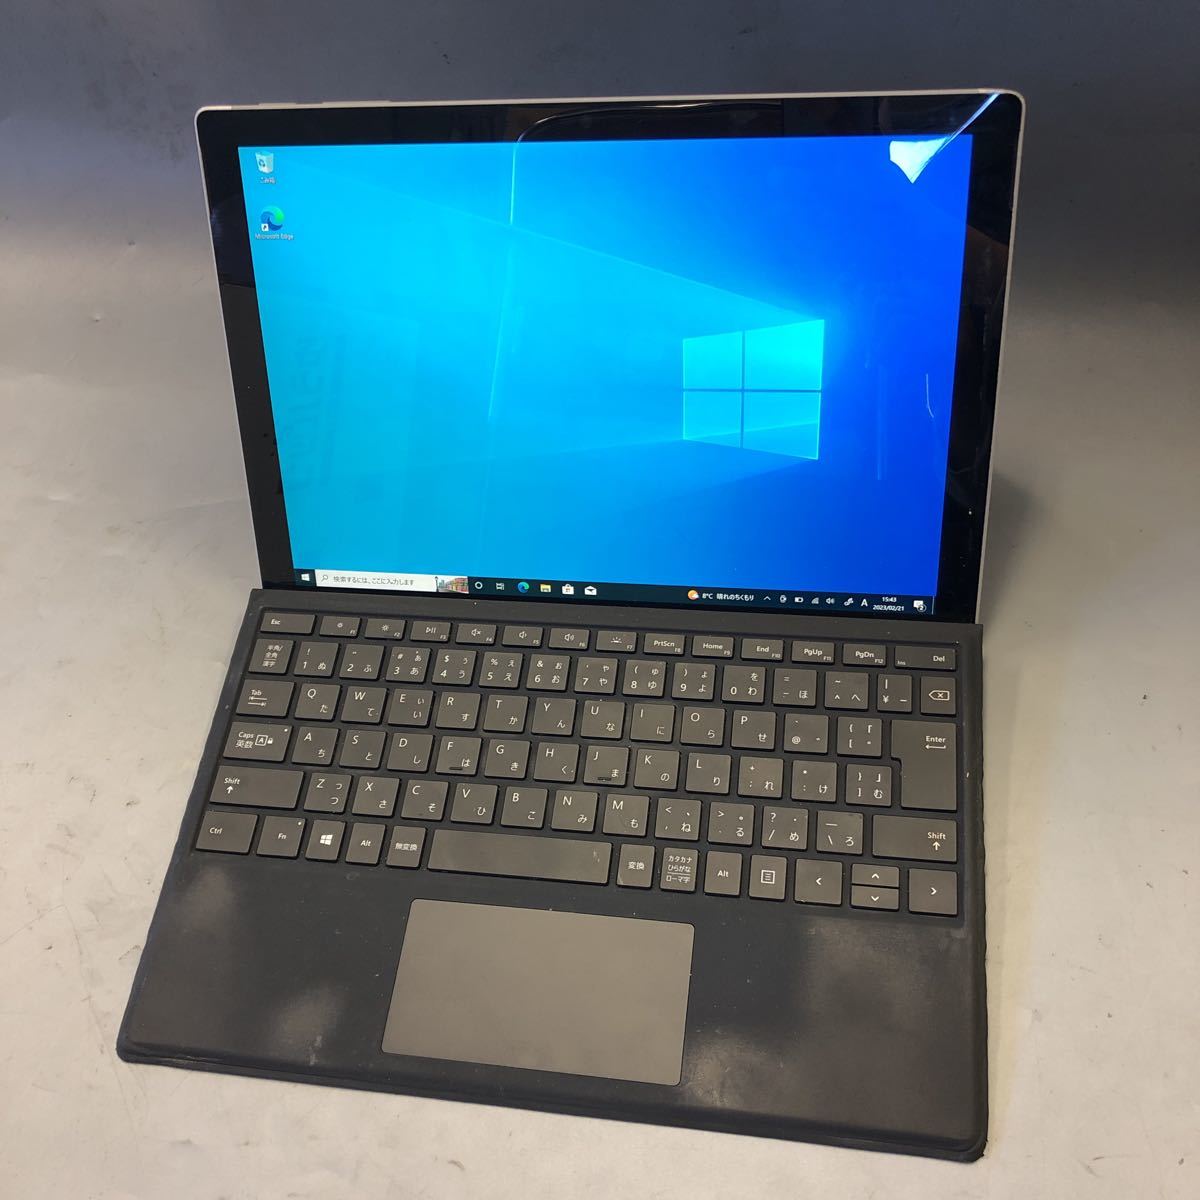 インチ】 JXNT2557/ Microsoft Surface Pro 6 1796 /Intel Core i5